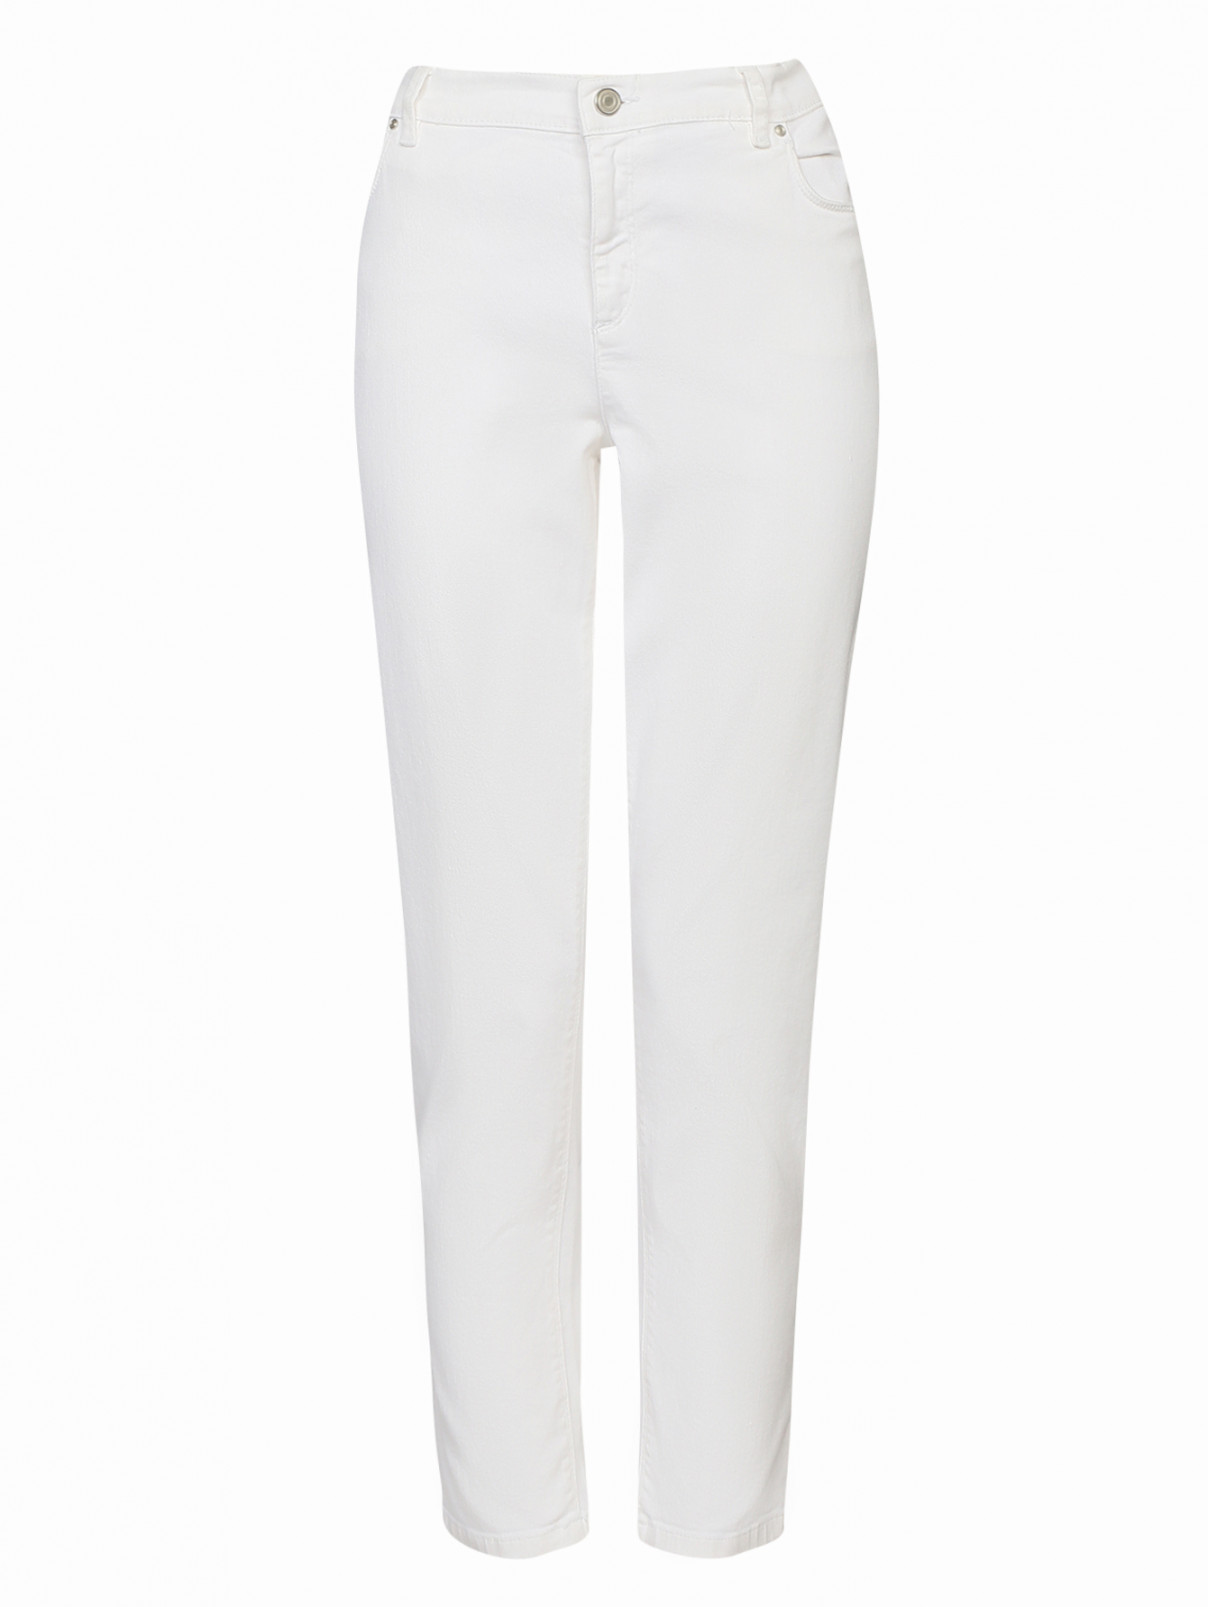 Узкие джинсы с заниженной посадкой Marina Sport  –  Общий вид  – Цвет:  Белый